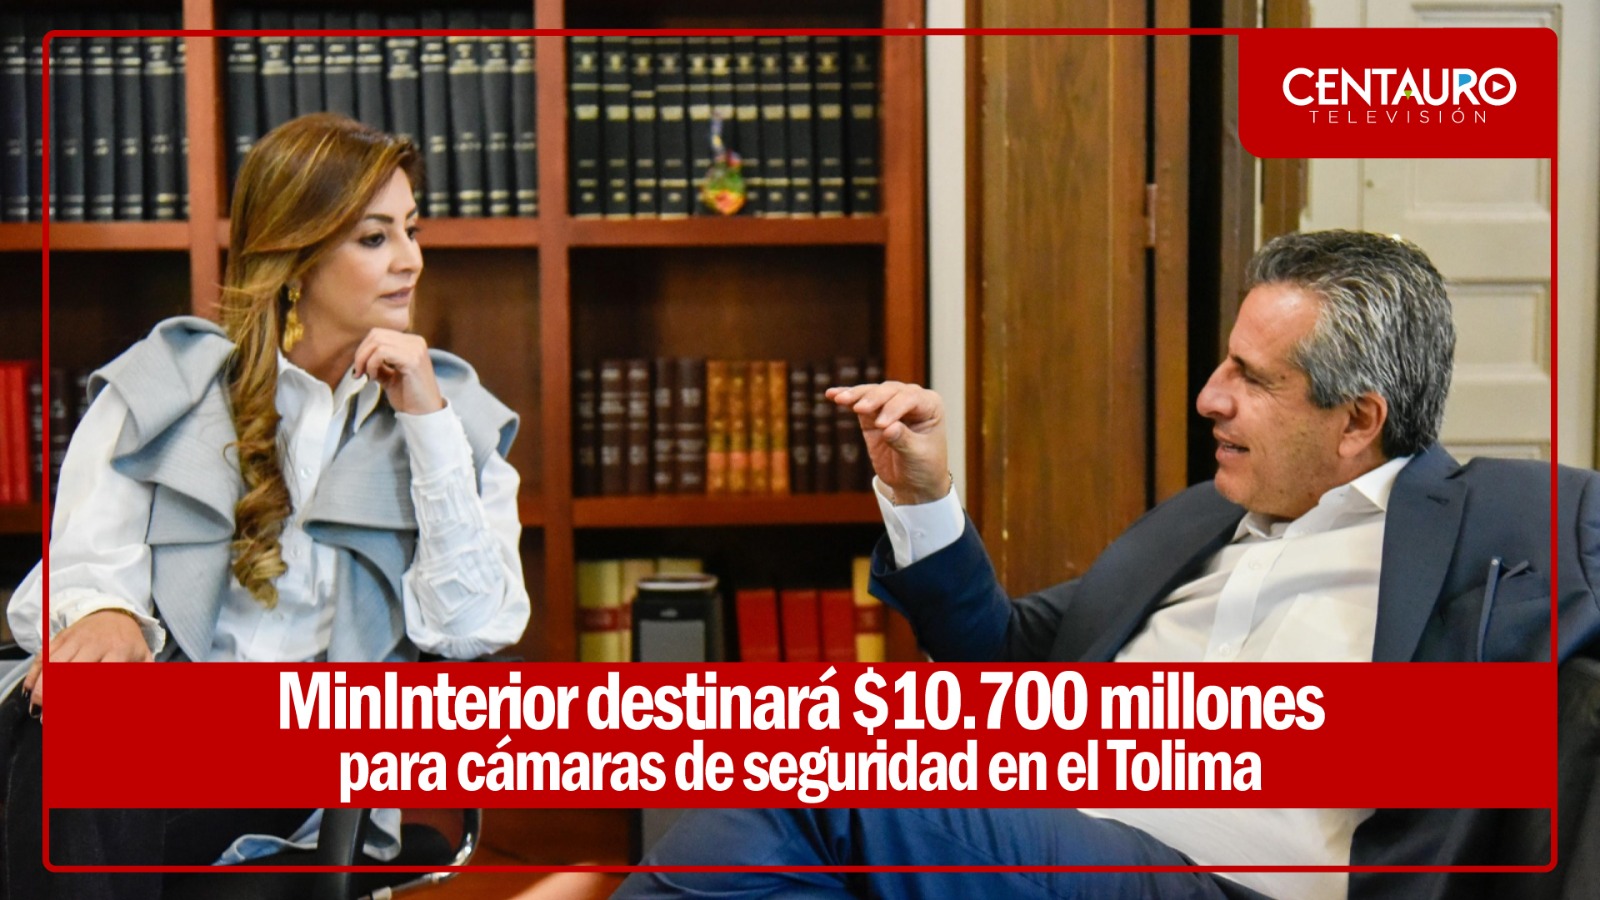 MinInterior destinará $10.700 millones para cámaras de seguridad en el Tolima